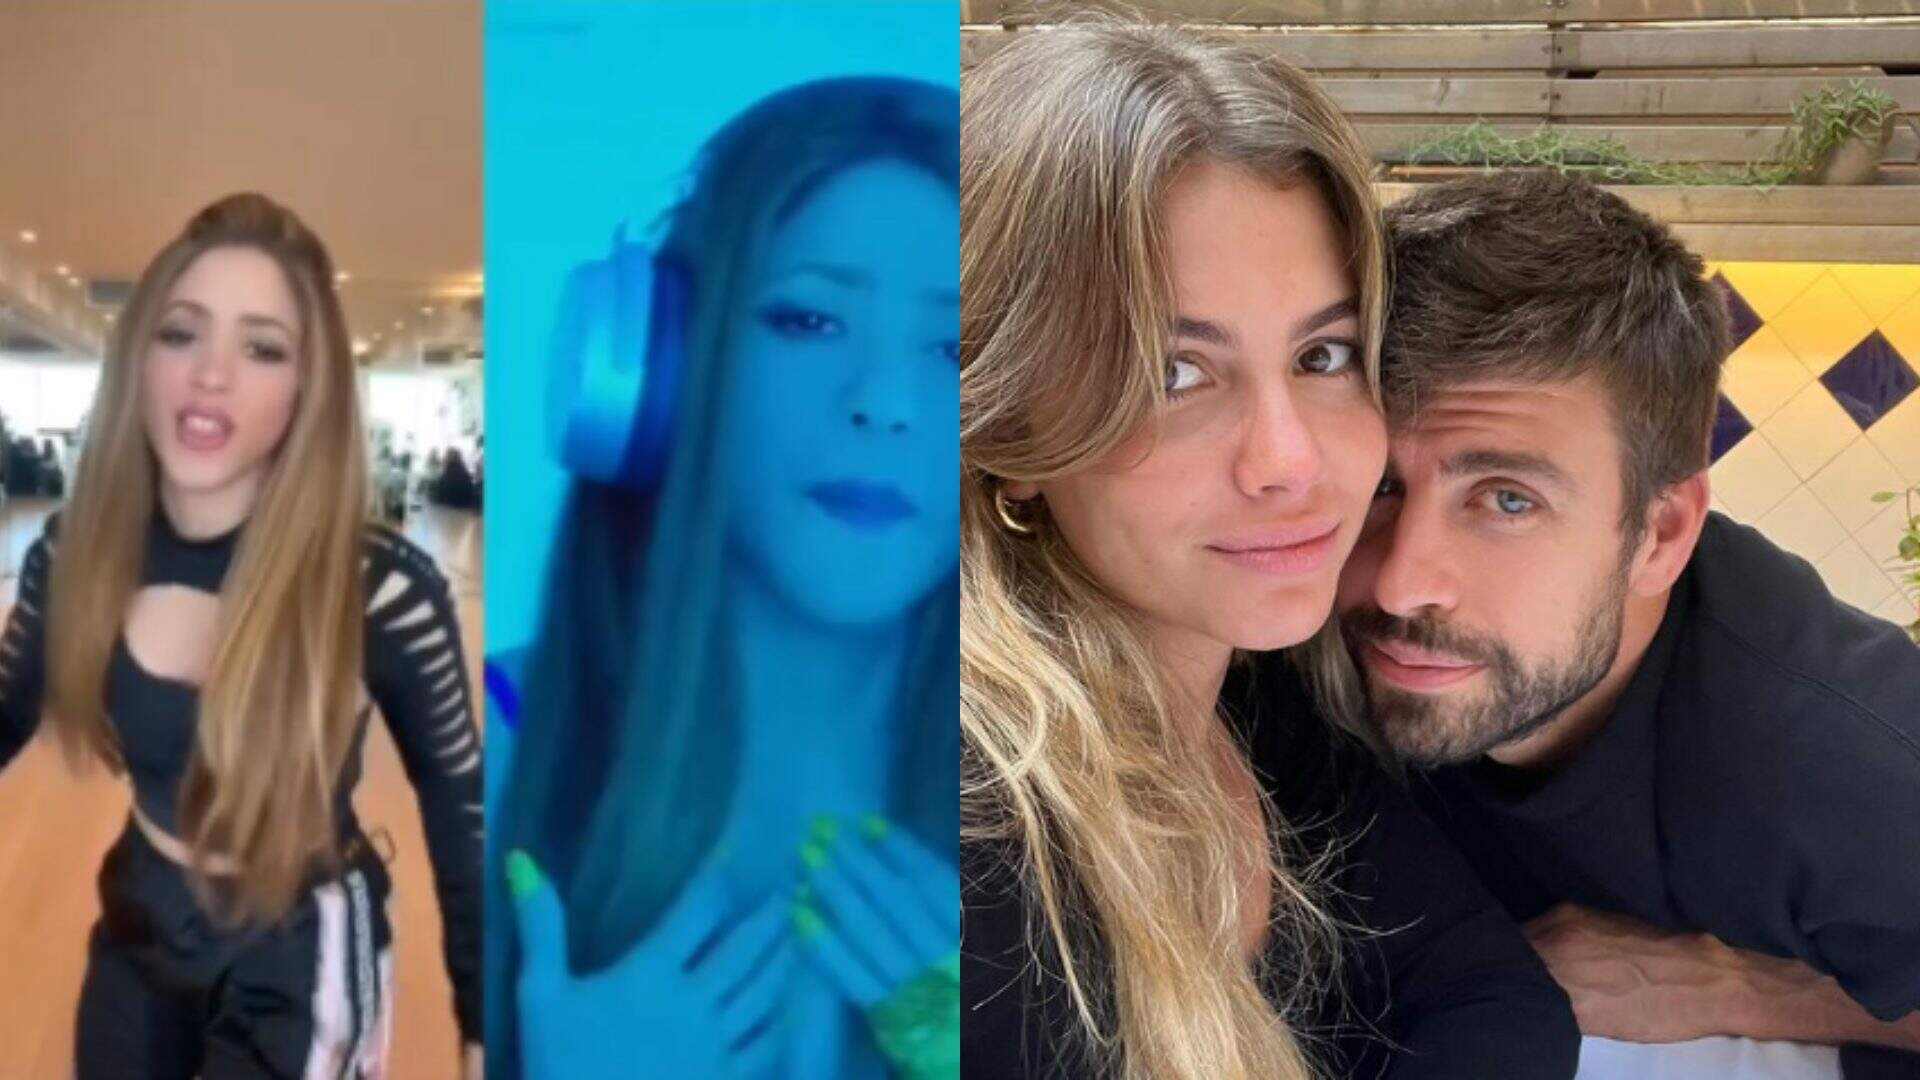 Confira a resposta de Shakira para Piqué após ex postar foto com atual namorada